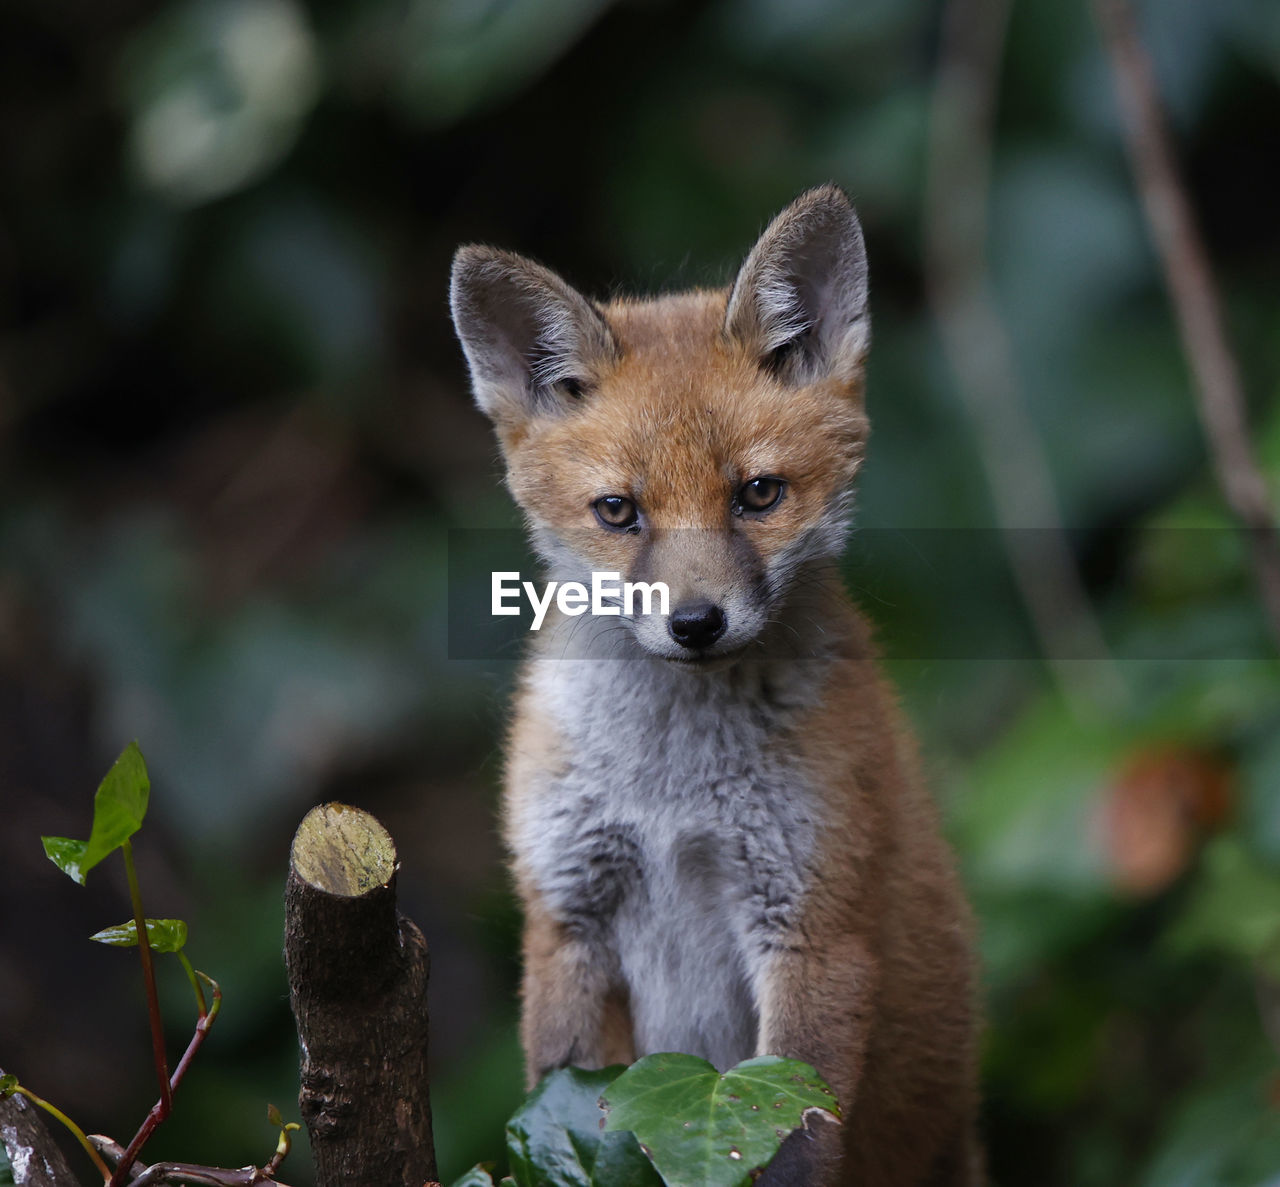 Young fox cub posing in an urban garden